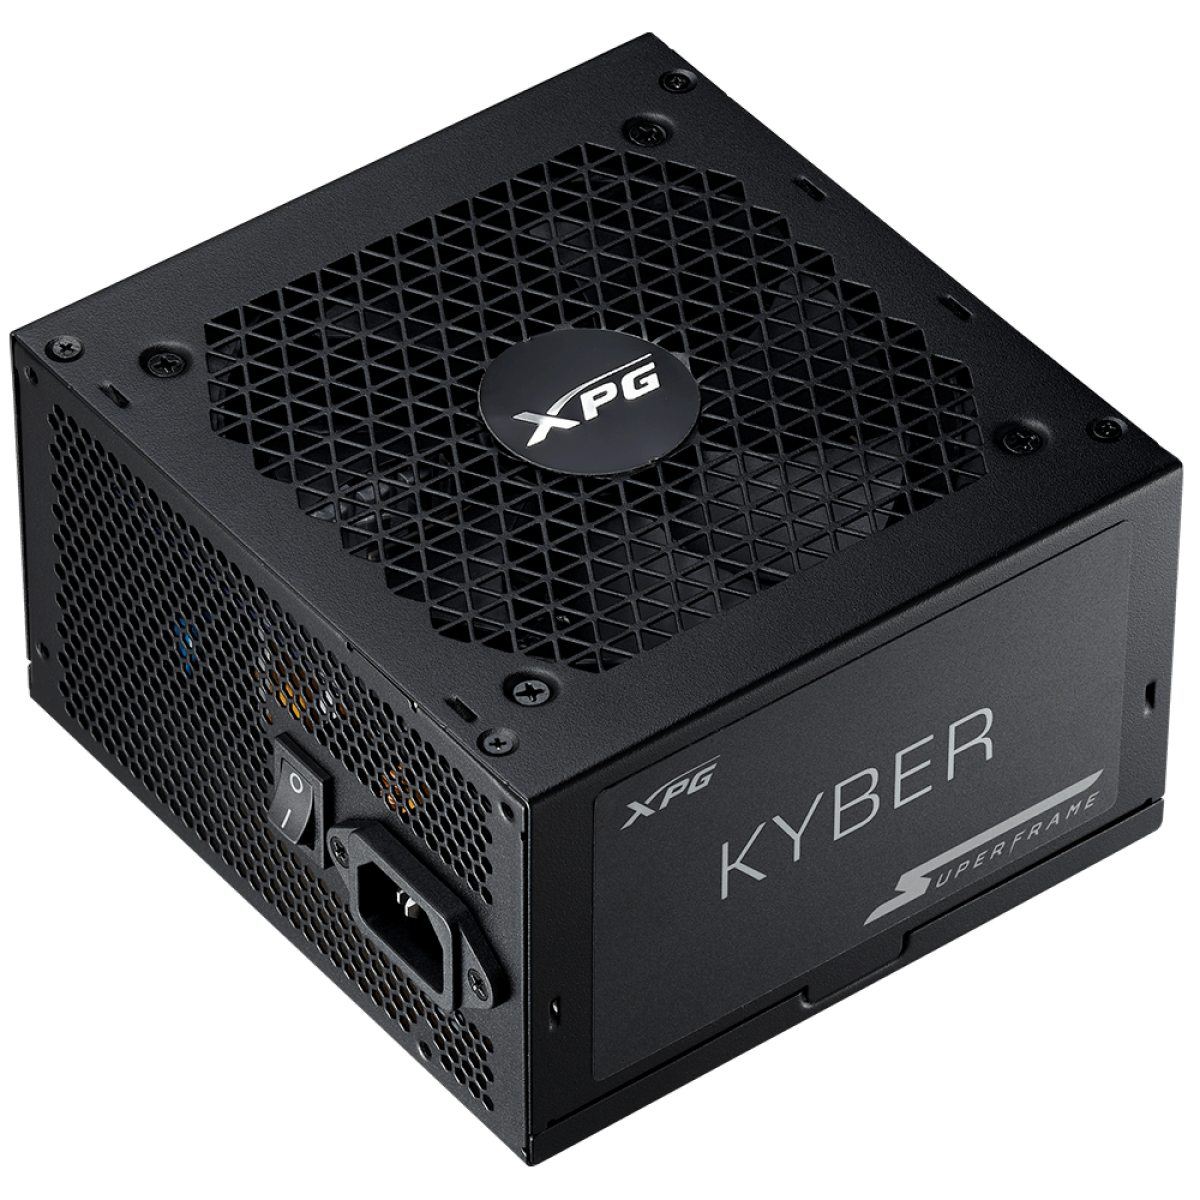 Fonte SuperFrame Kyber, By XPG, 750w, 80 Plus Gold, Com conector PCIe 5.0, PFC Ativo